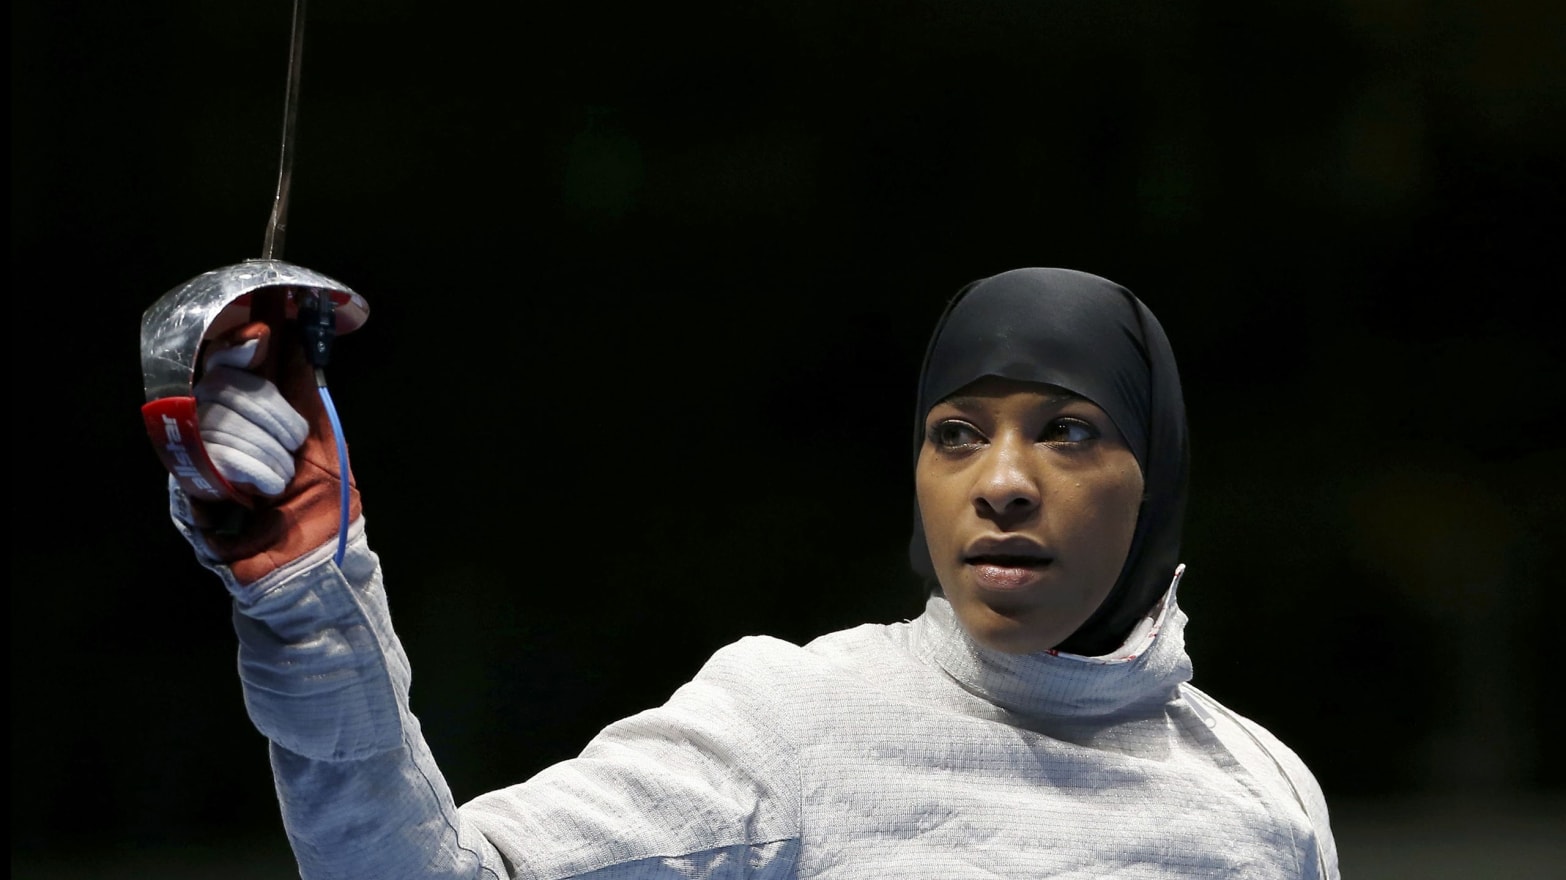 Breaking Women In Hijab Play Sports